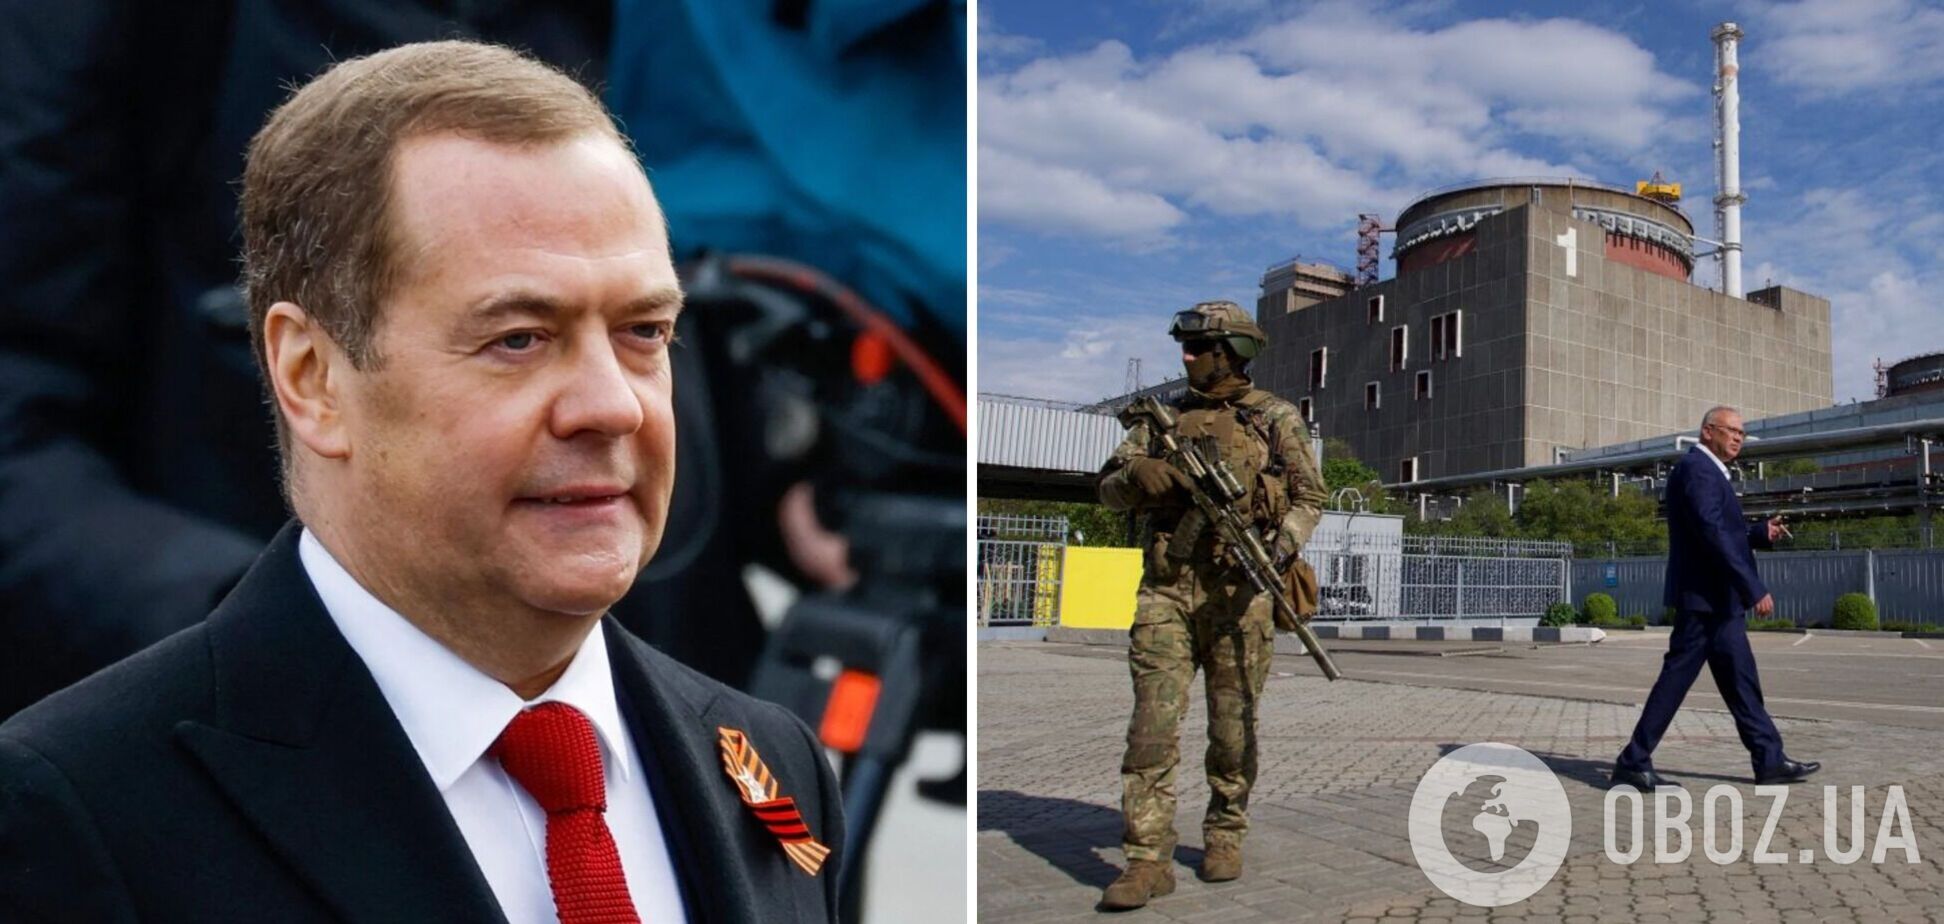 Медведев попытался угрожать Европе: намекнул на 'случайности' на АЭС